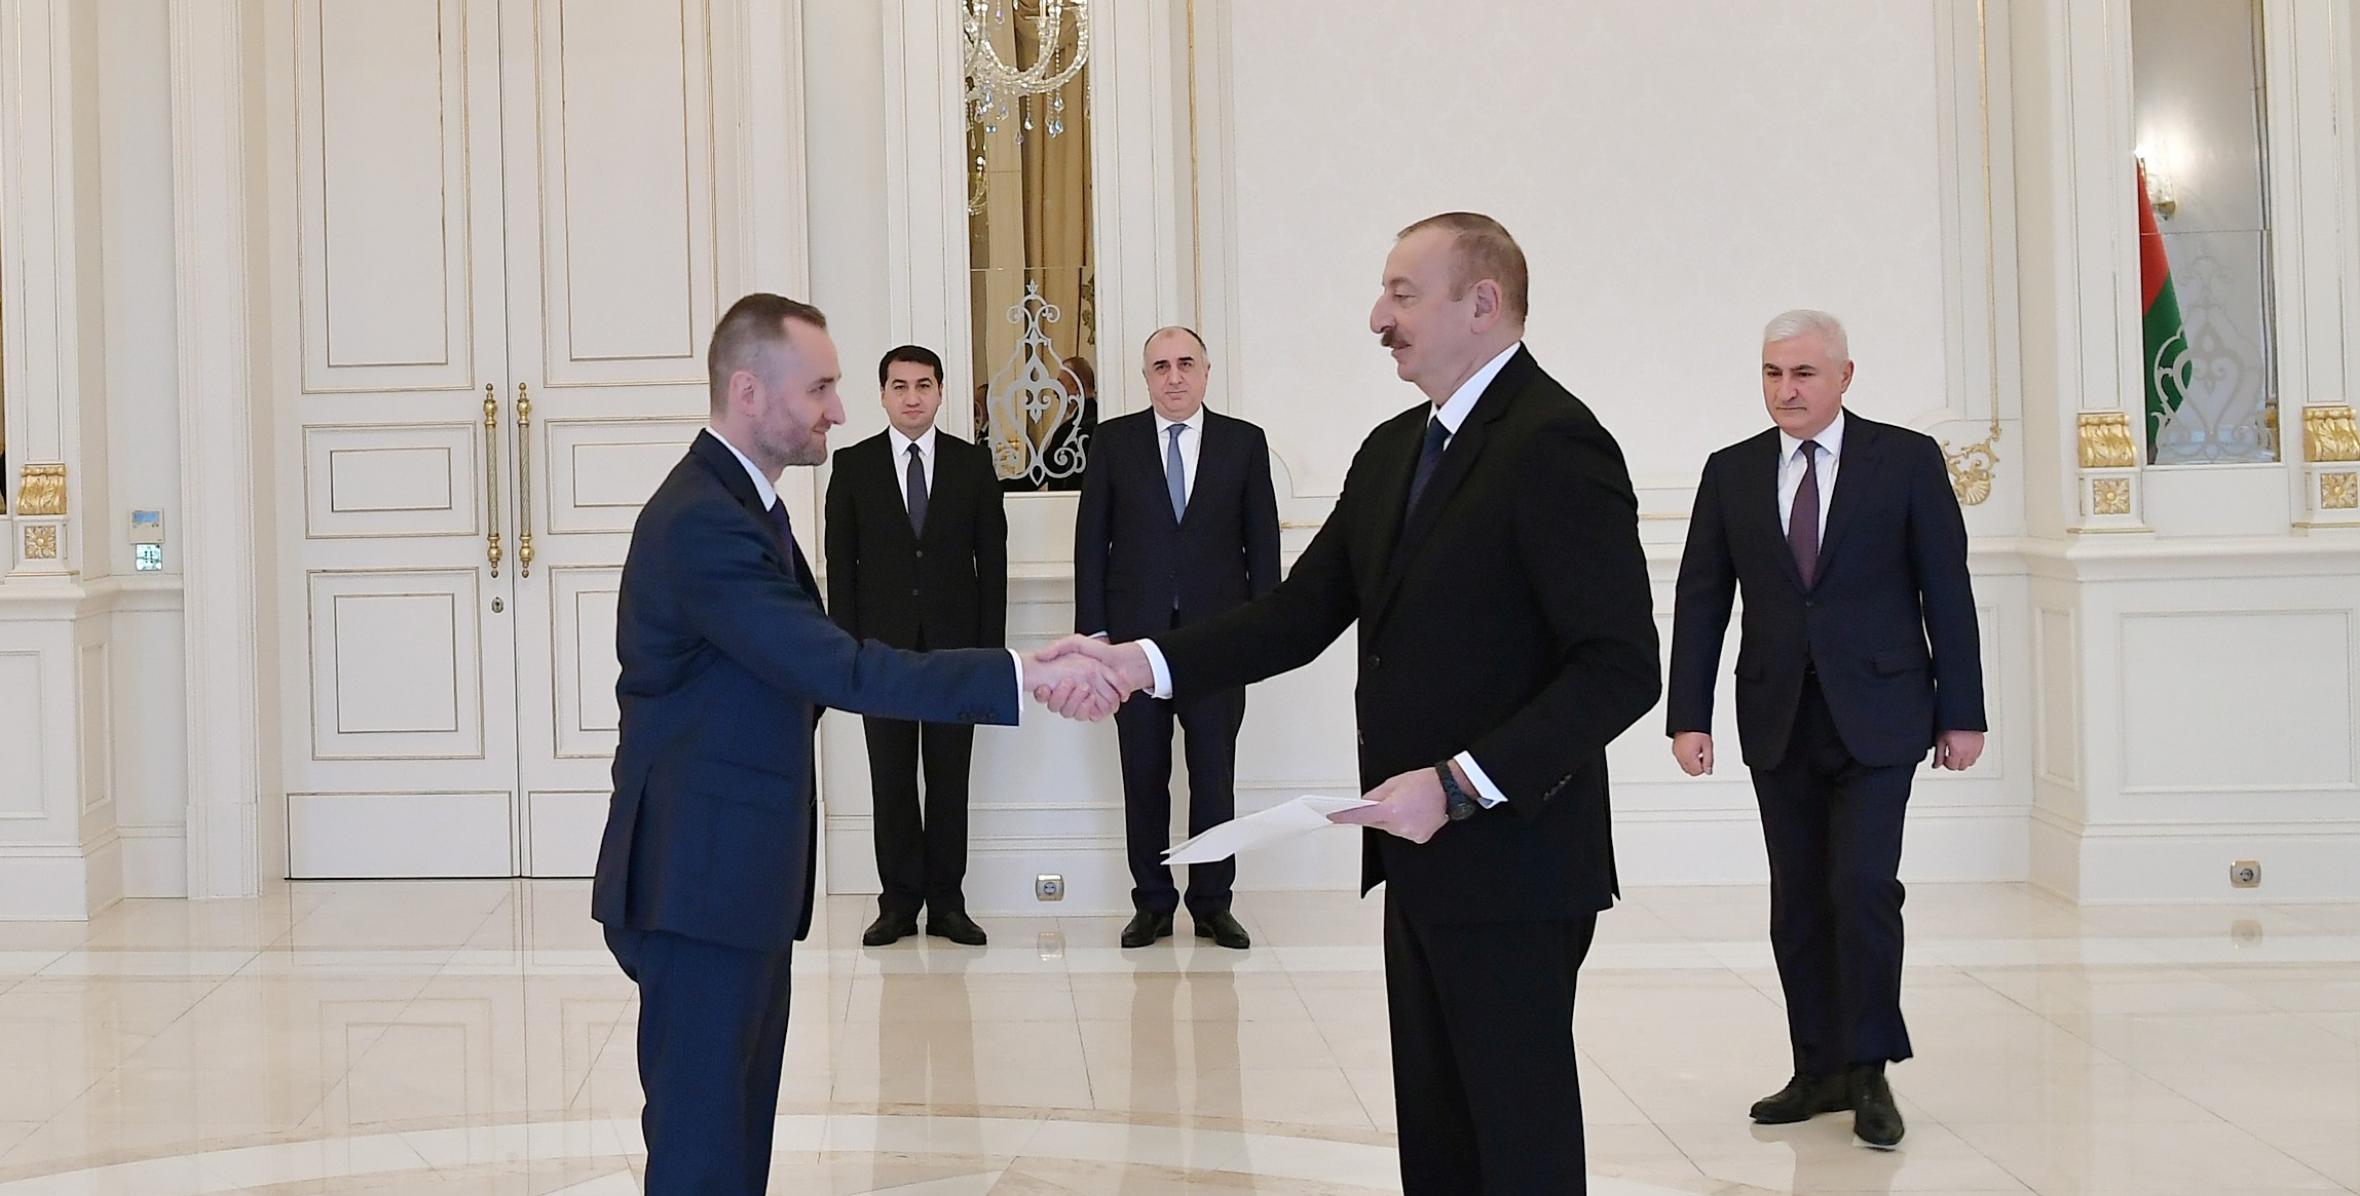 Ильхам Алиев принял верительные грамоты новоназначенного посла Польши в Азербайджане